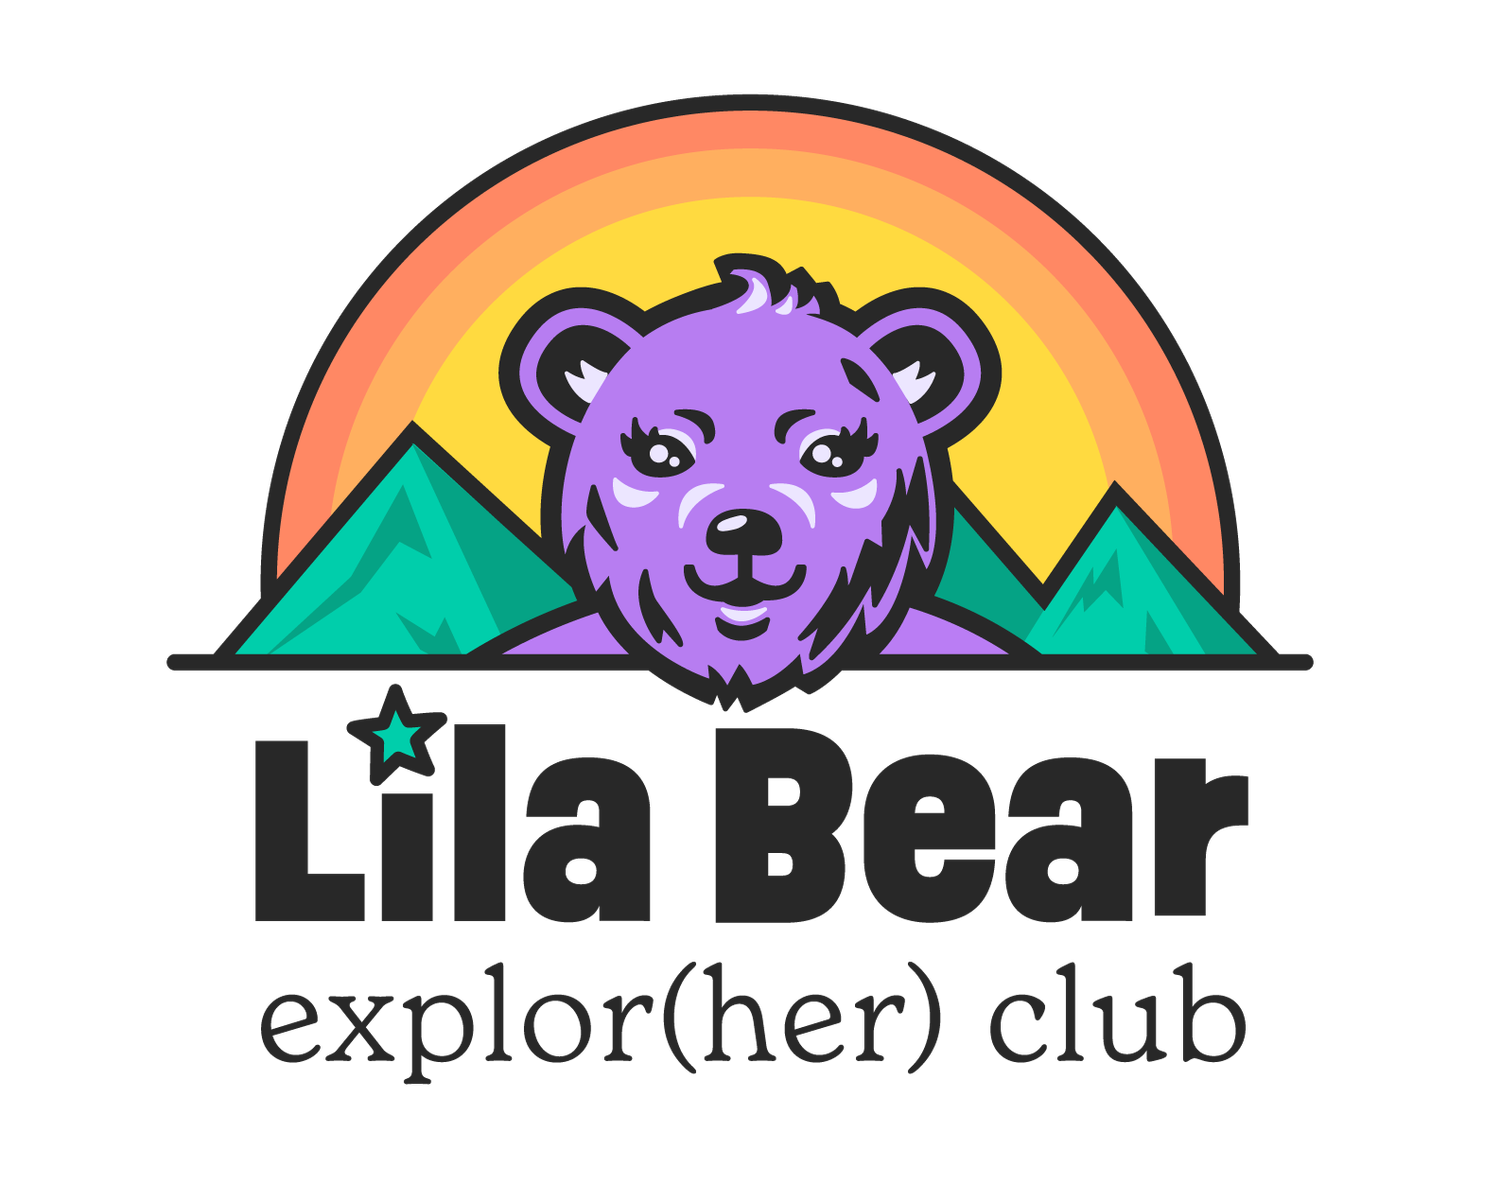 Lila Bear Explor(her) Club